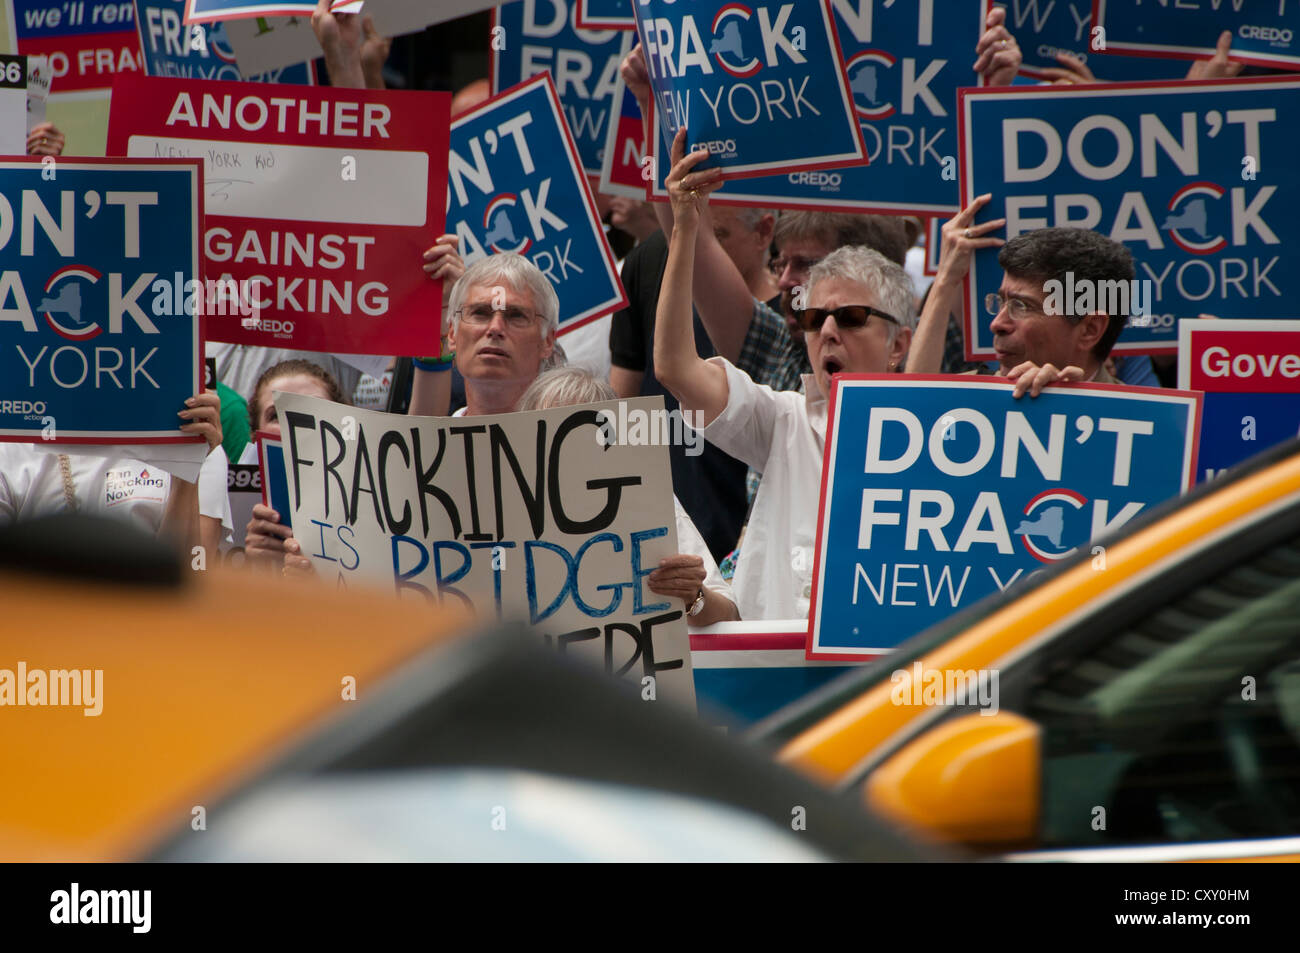 Une manifestation de protestation contre la fracturation hydraulique Manhattan pour le gaz naturel à New York en dehors de NY gouverneur Cuomo's hotel. Banque D'Images